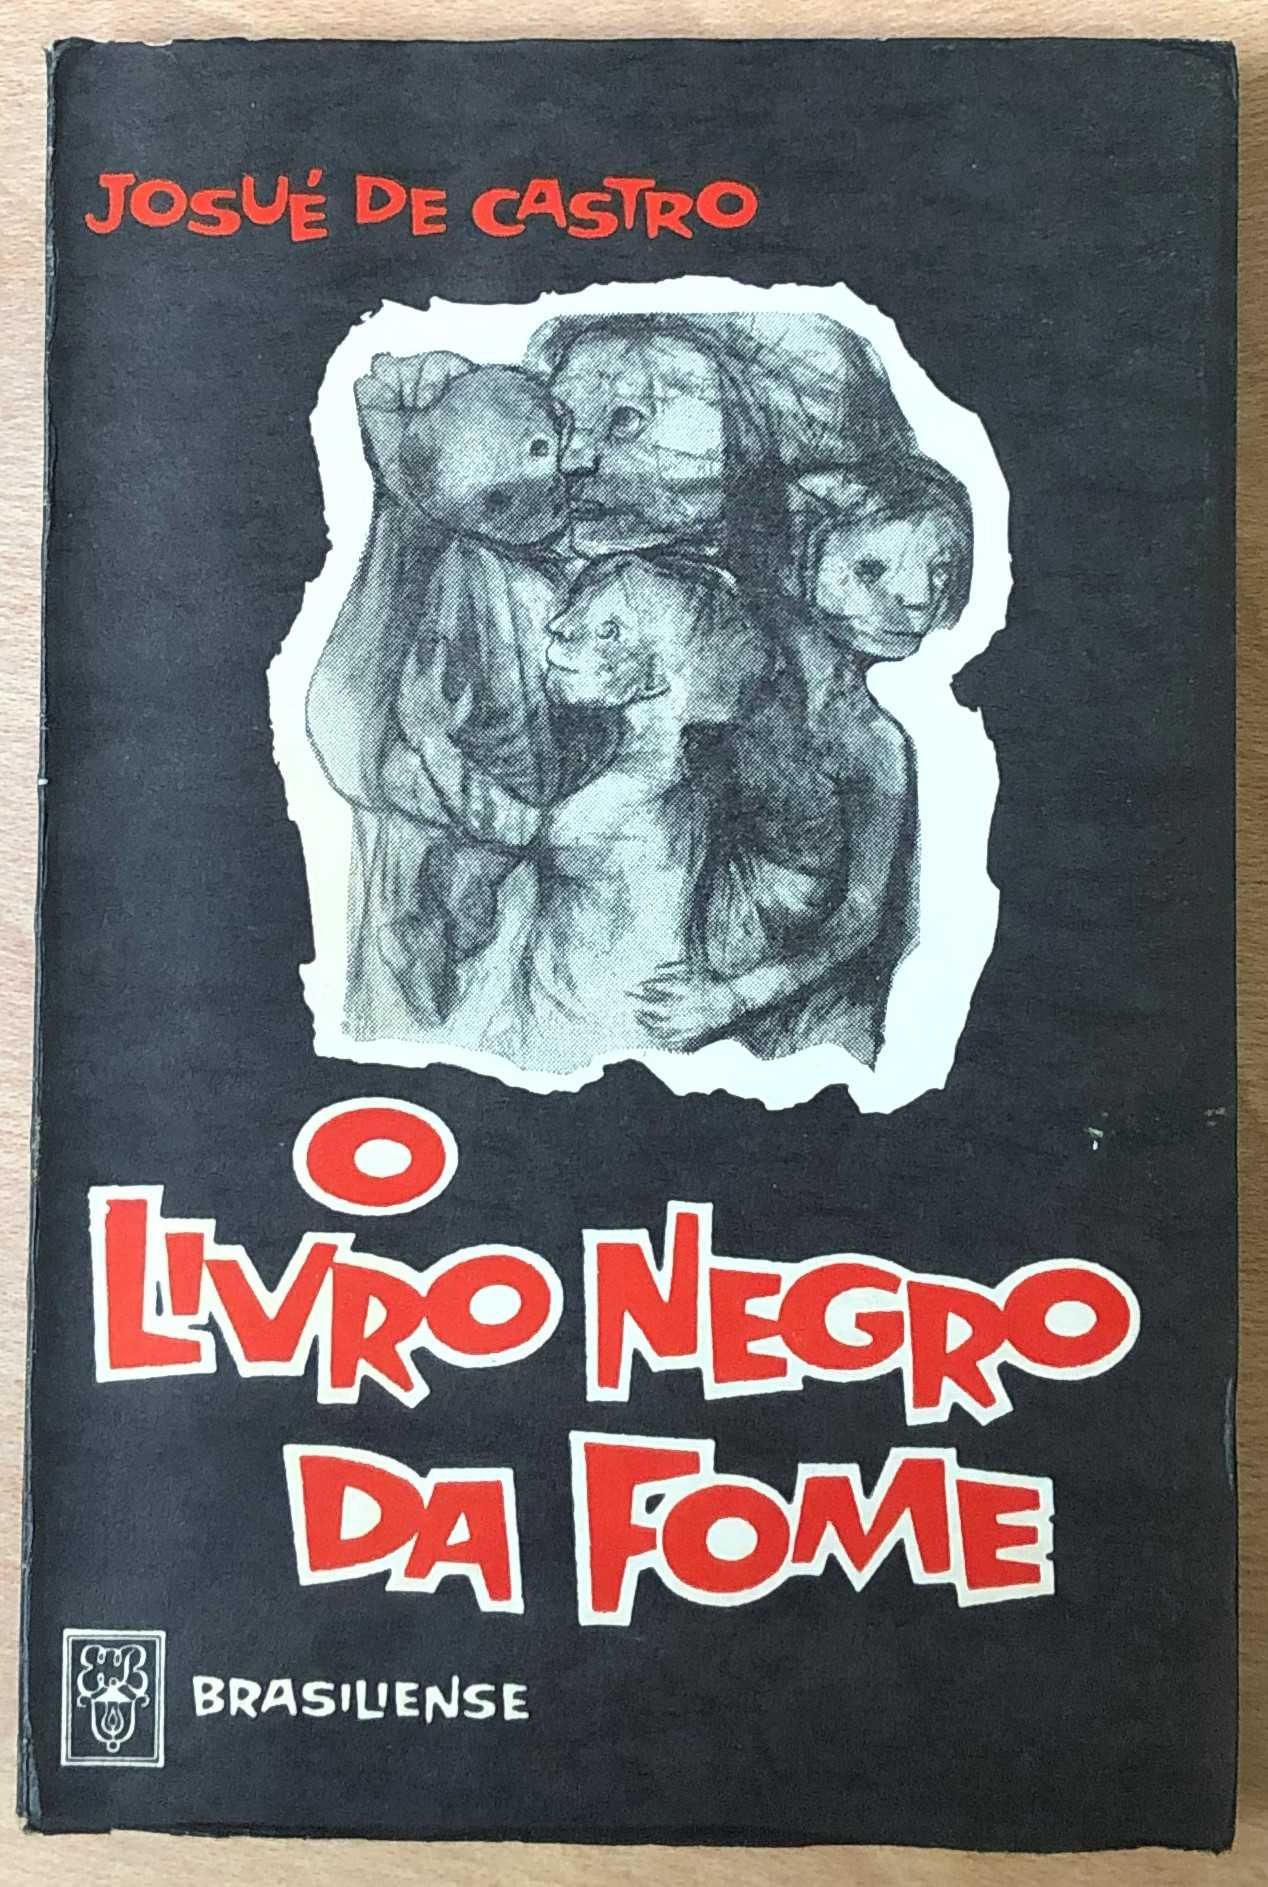 o livro negro da fome, josué de castro, brasiliense